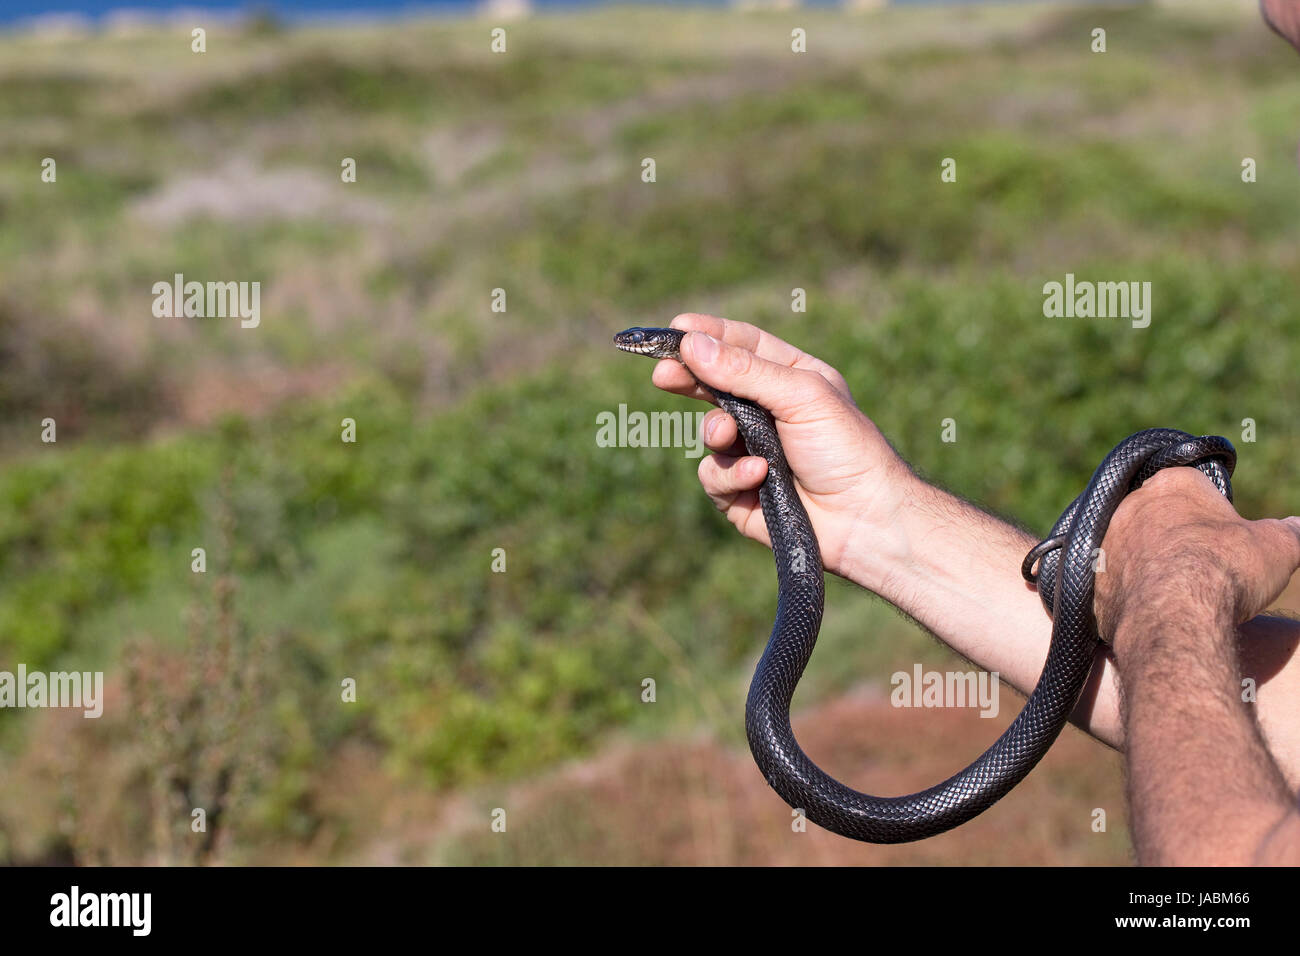 Western látigo serpientes serpientes (Hierophis viridiflavus) Foto de stock